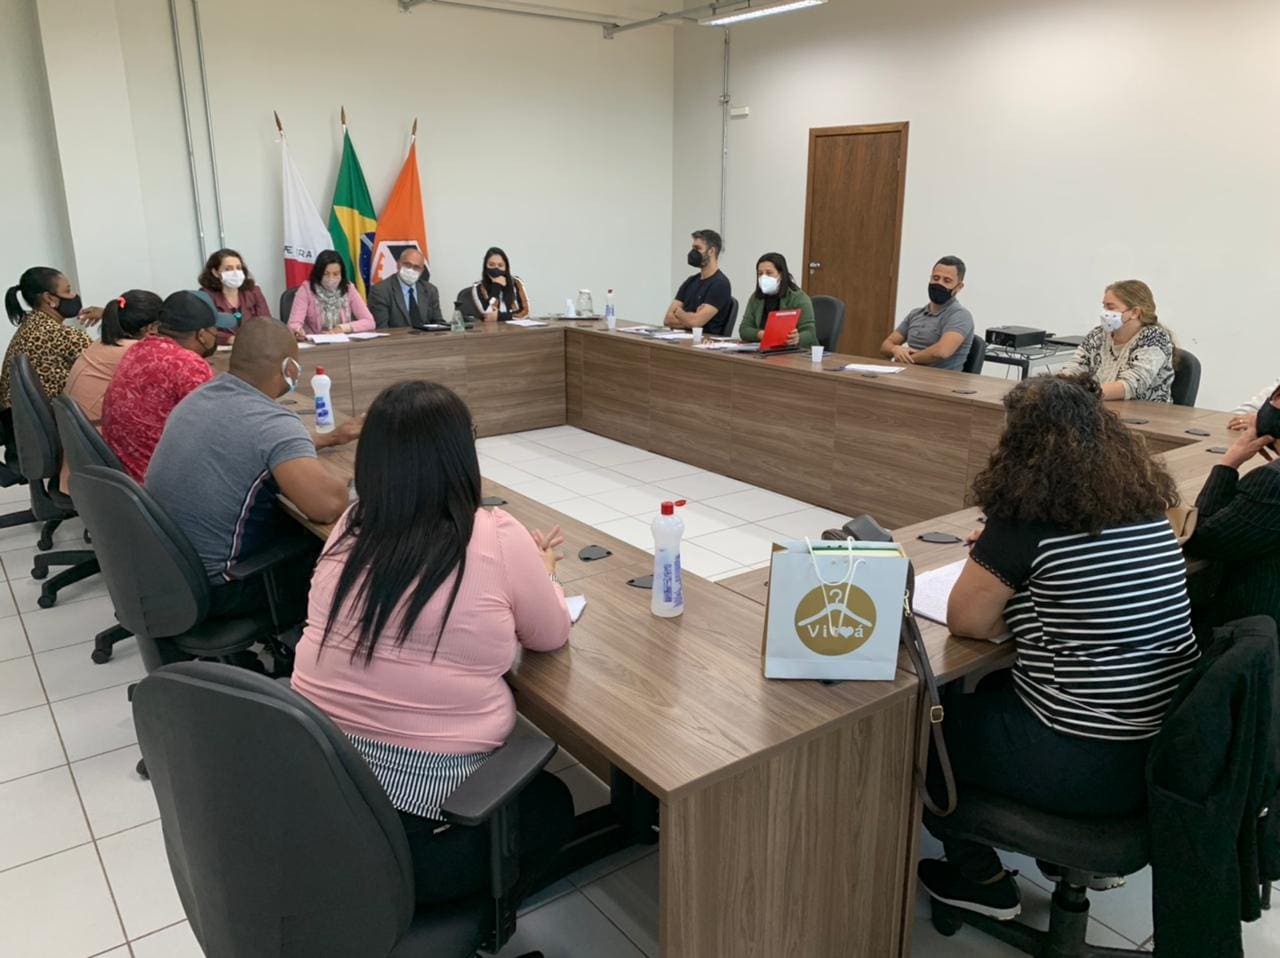 Representantes da comunidade escolar do bairro Santa Lúcia se reuniram com a prefeitura por Cmei Rafael Nunes